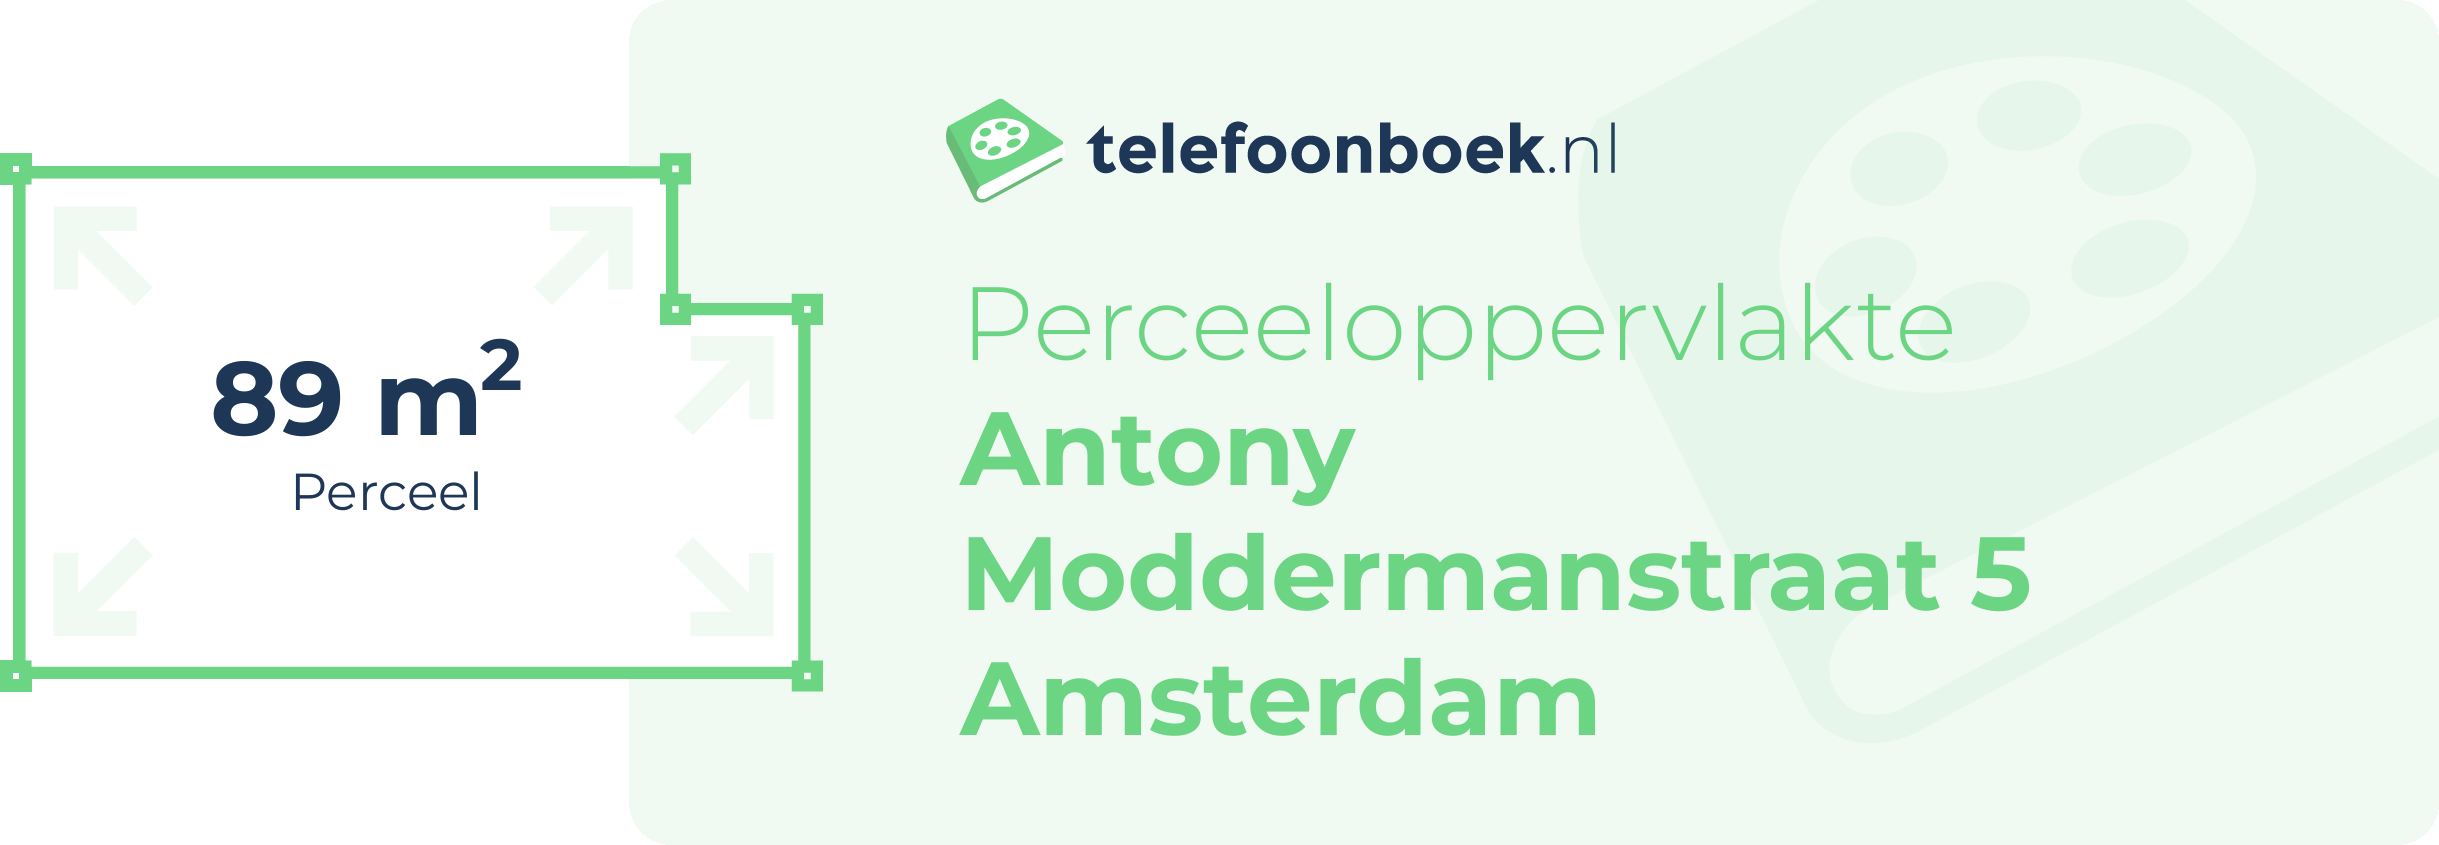 Perceeloppervlakte Antony Moddermanstraat 5 Amsterdam